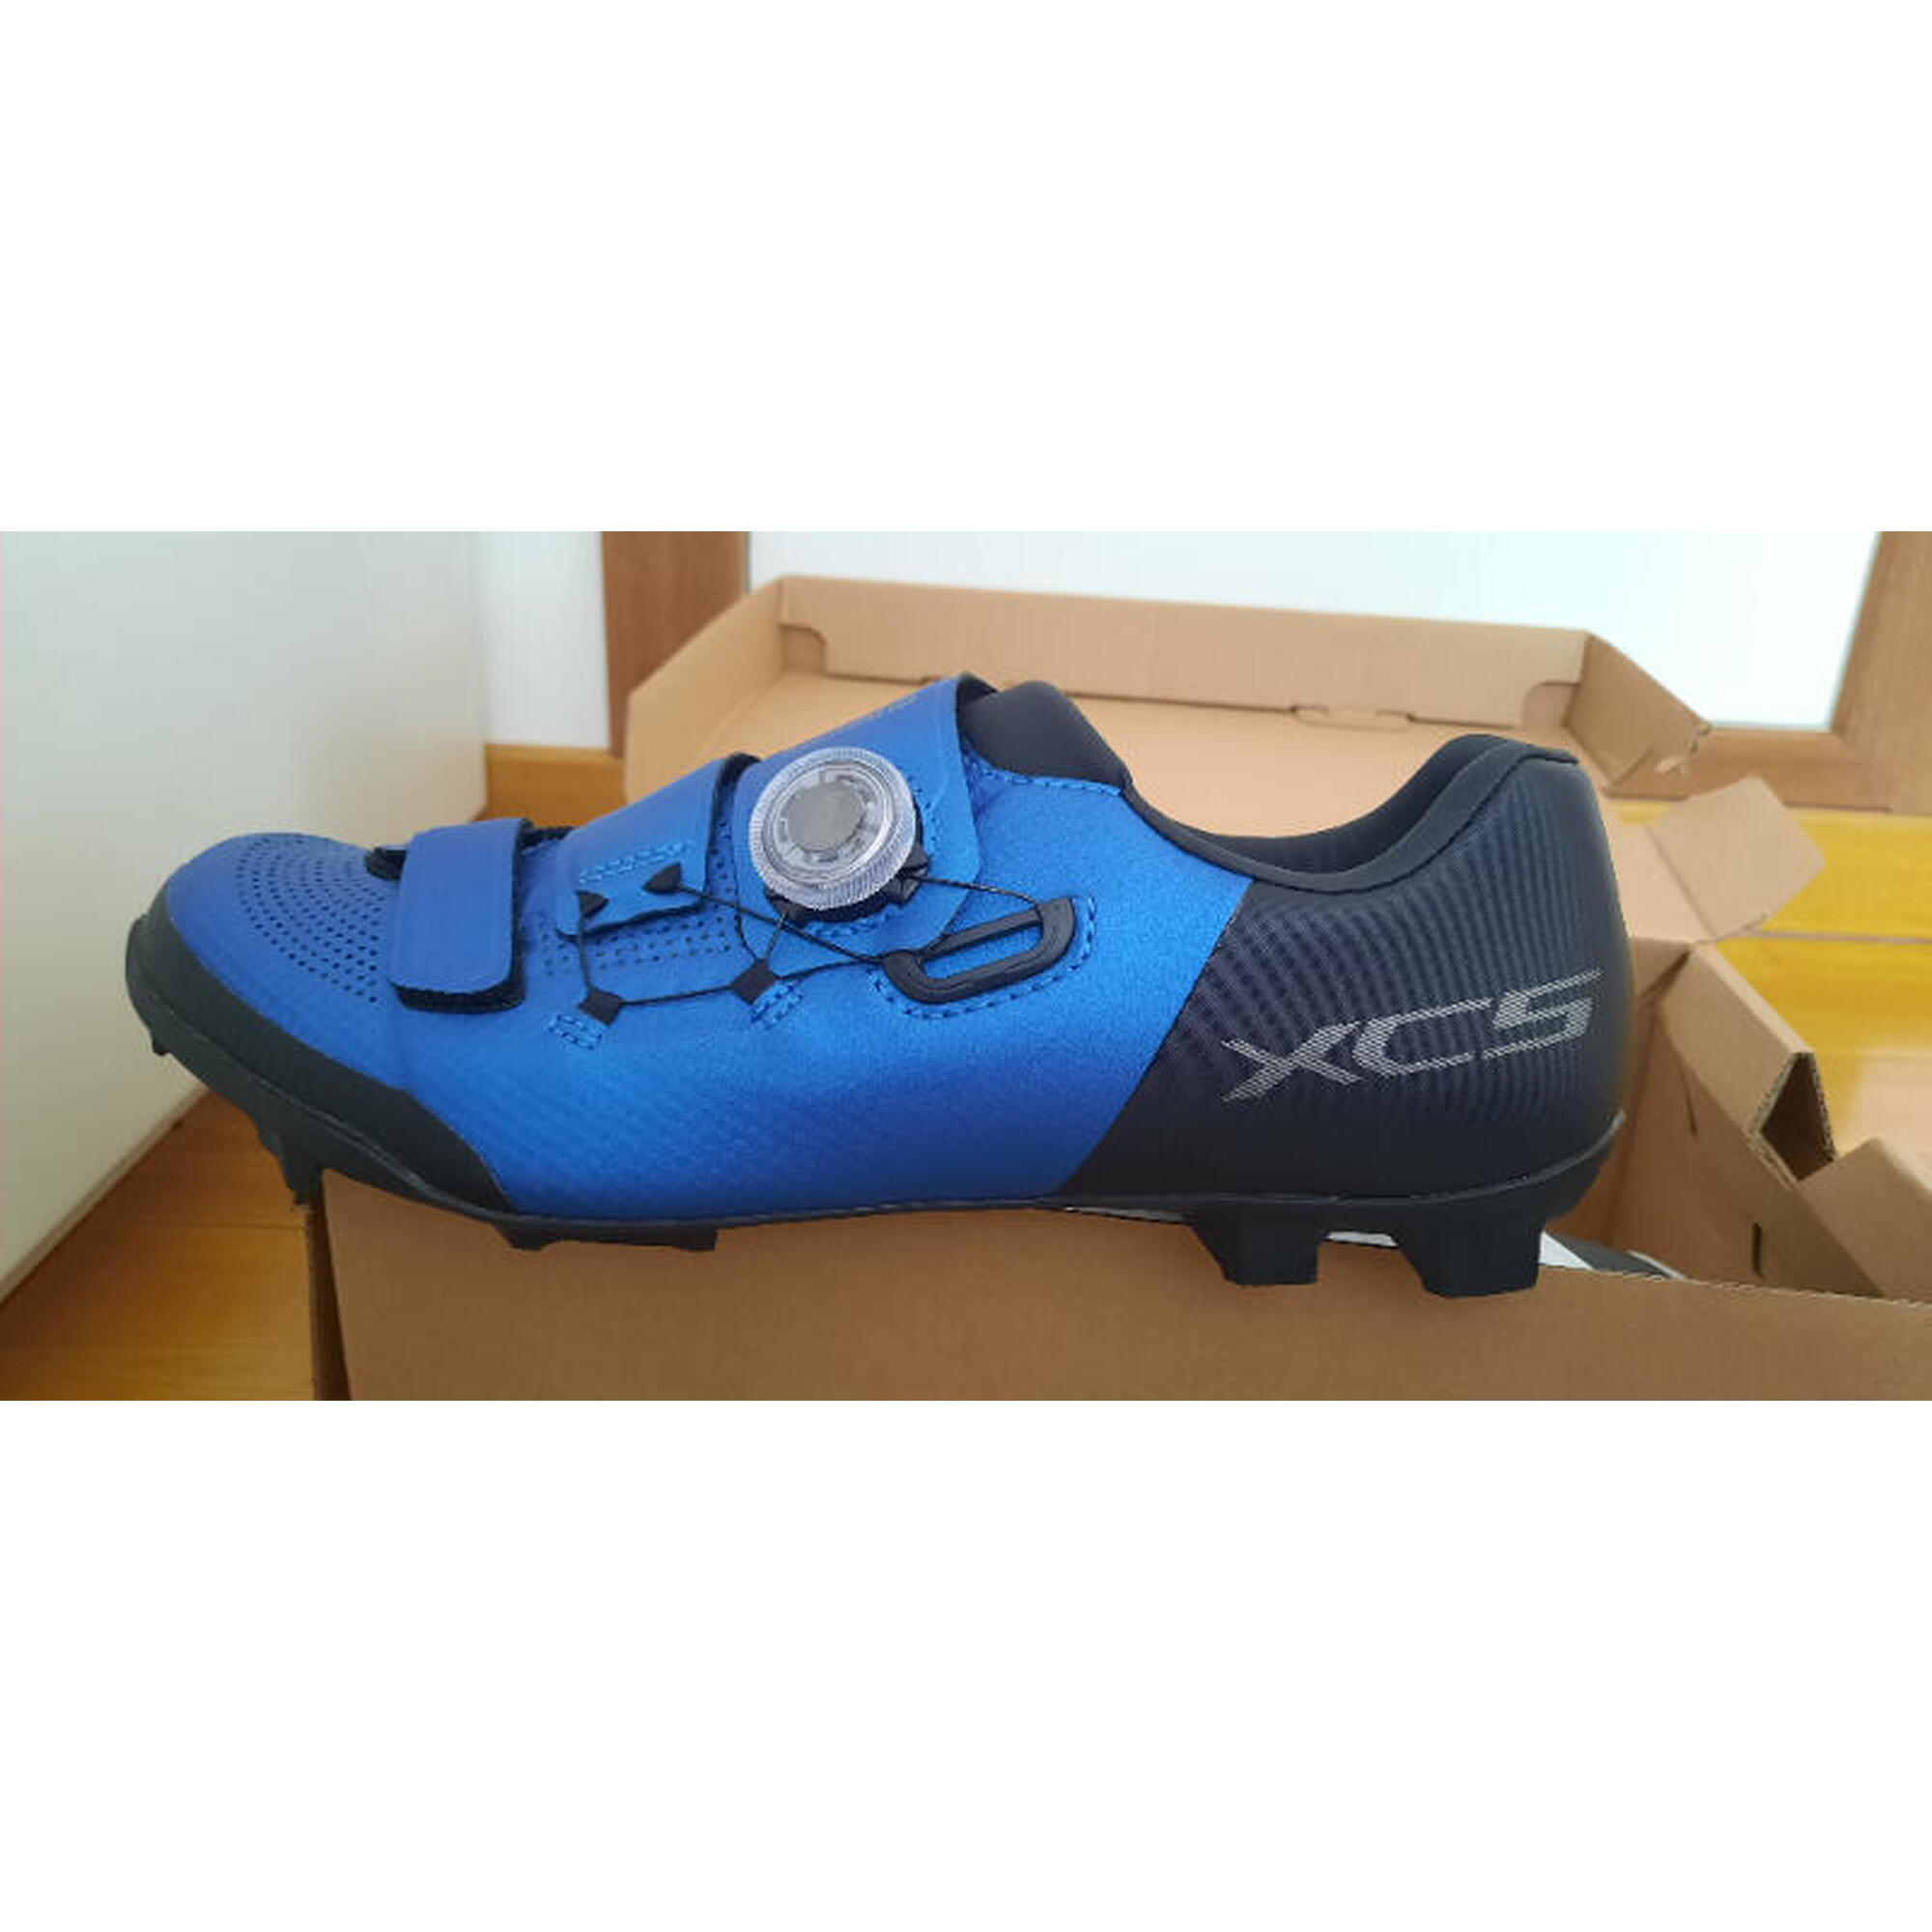 C2C - Shimano XC5 blauw/zwarte fietsschoenen